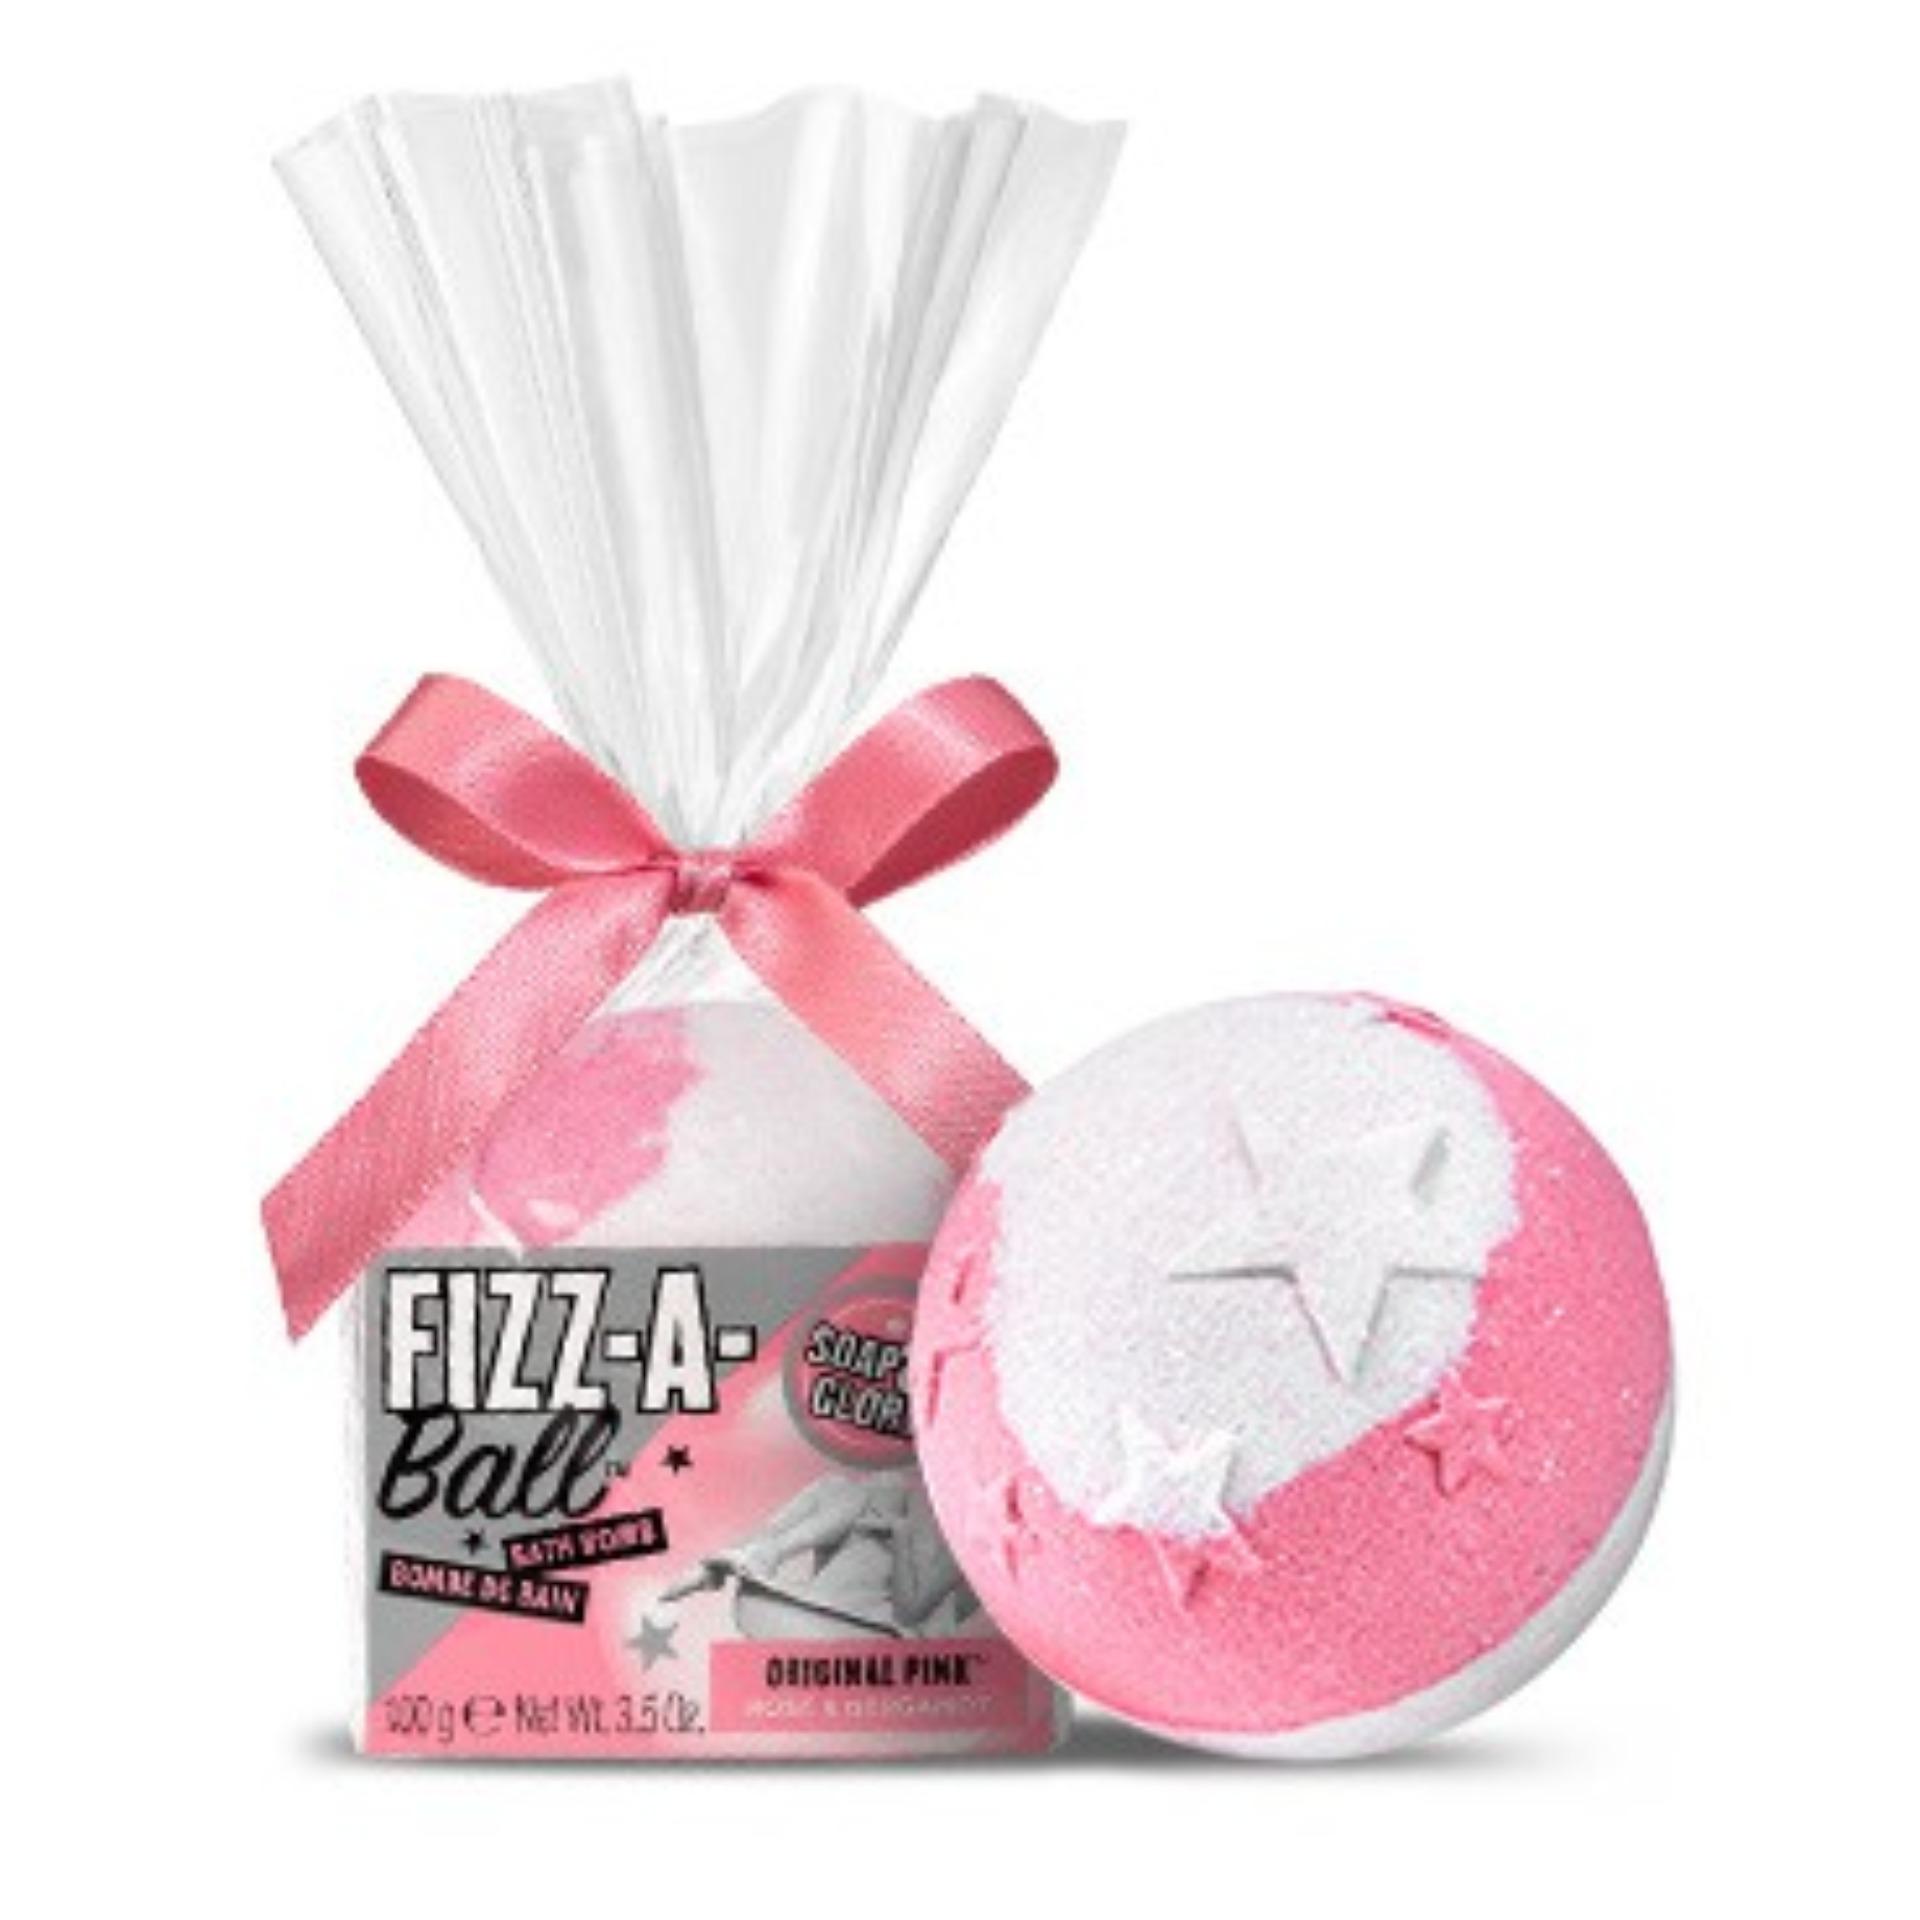 ิีbubble bath bomb Soap & glory fizz-a-ball bath bomb - original pink 100g  ผลิตภัณฑ์แช่น้ำอาบหรือผสมน้ำอาบ 